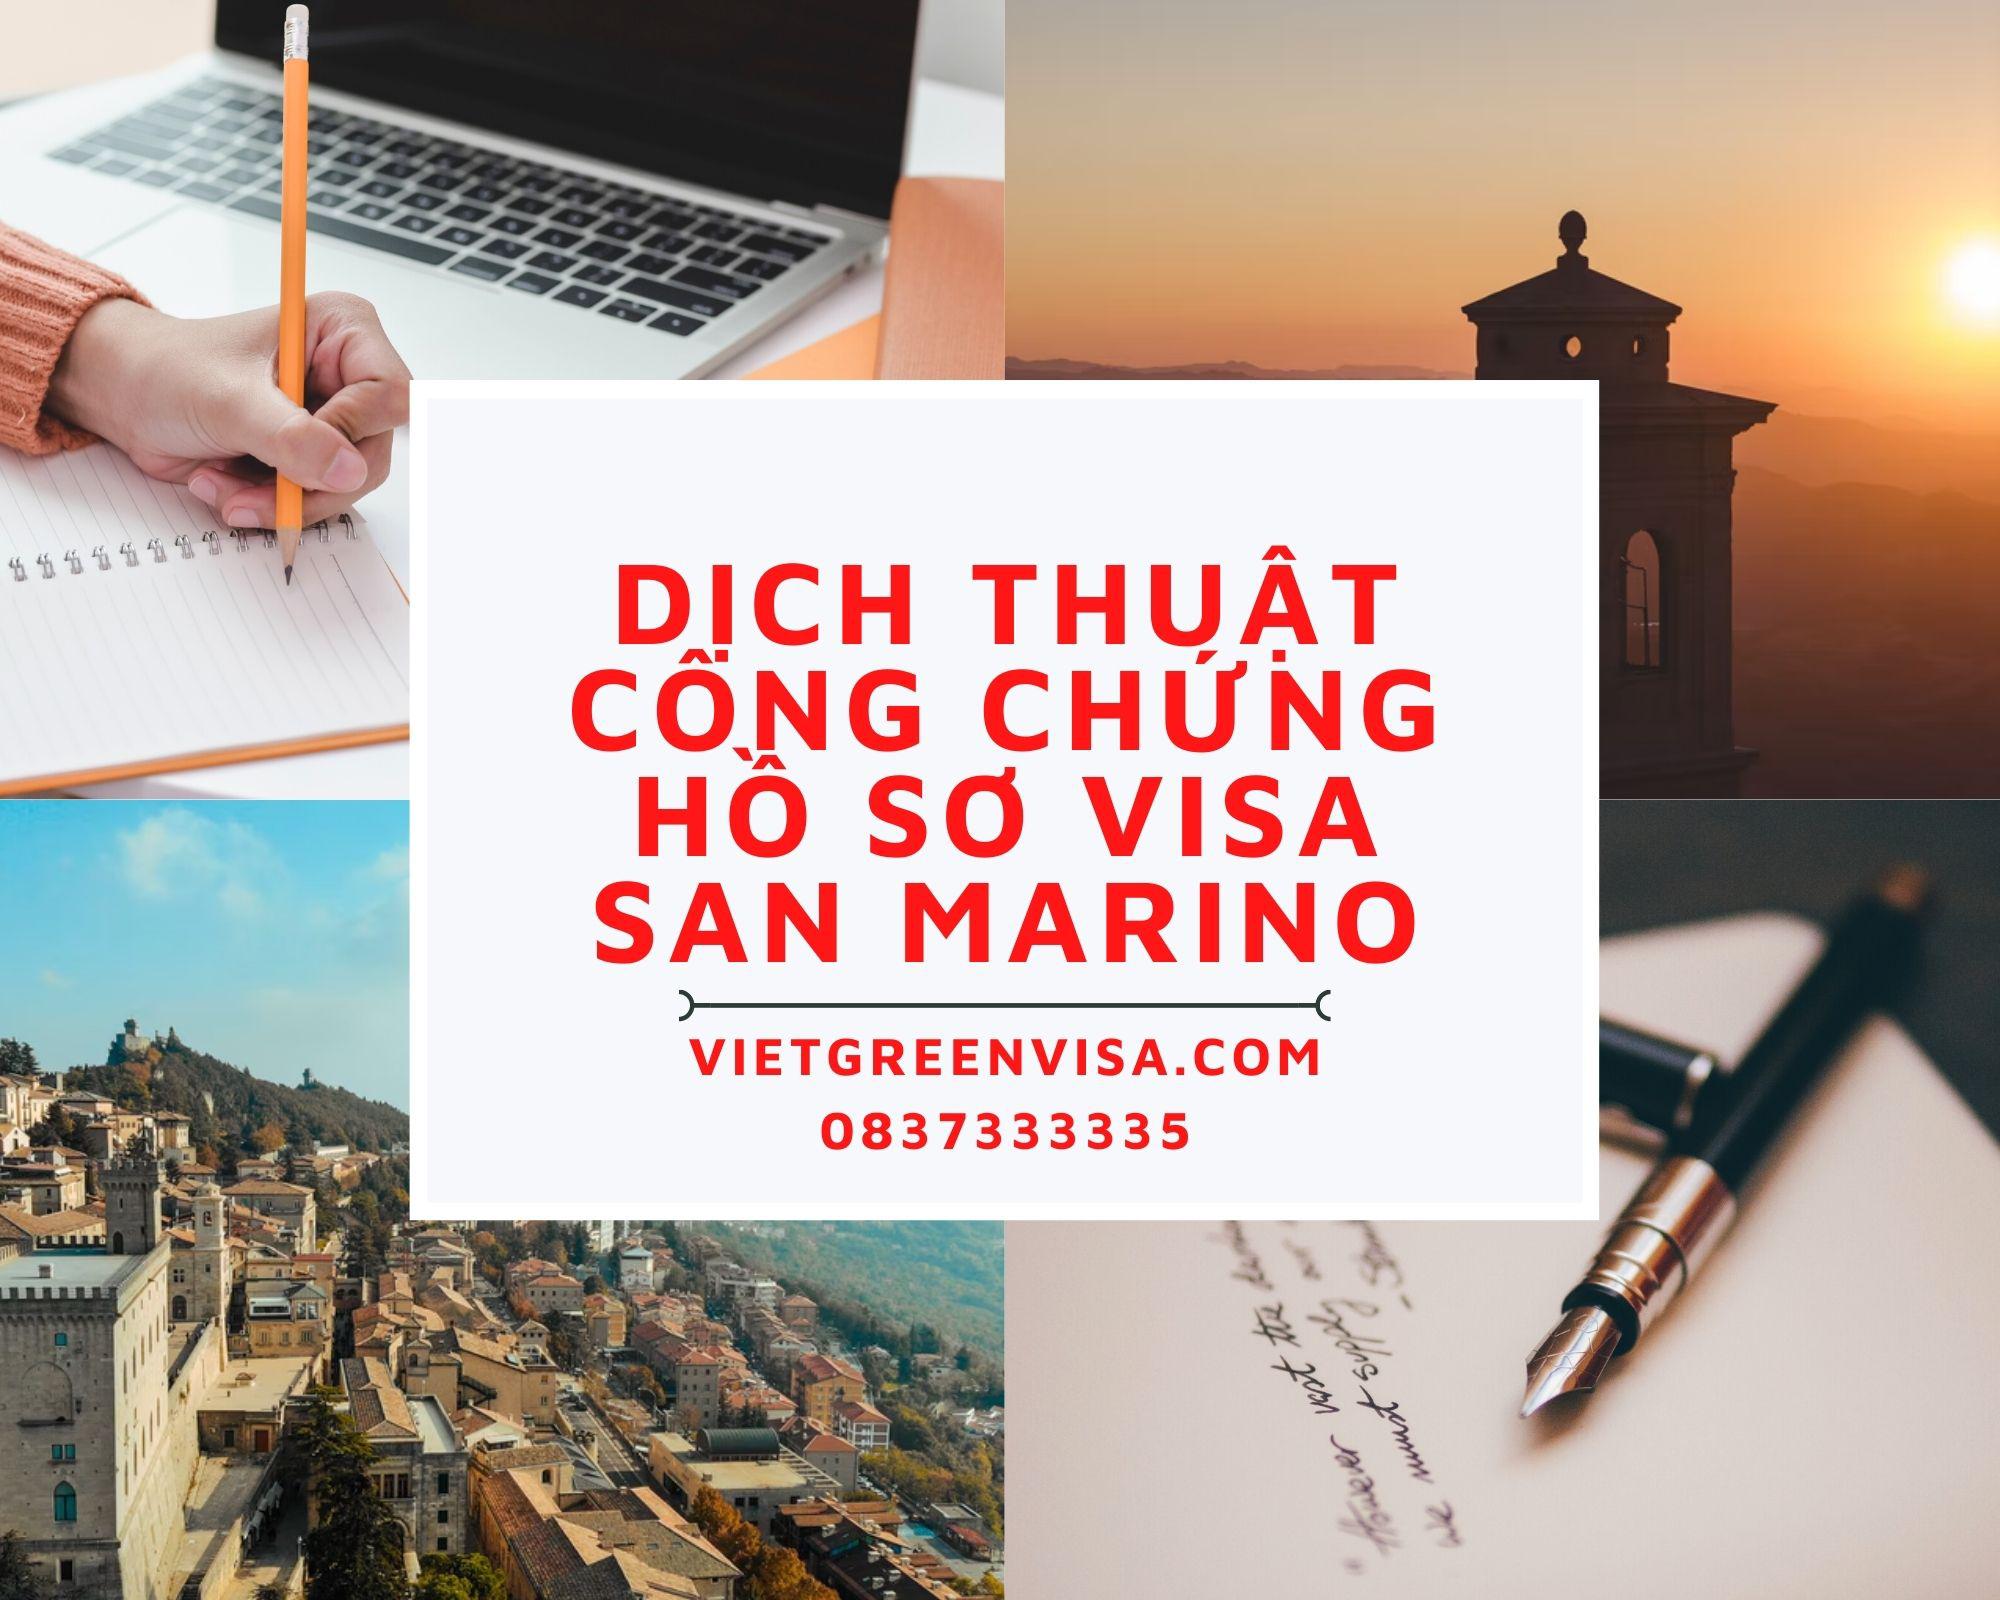 Tư vấn dịch thuật công chứng hồ sơ visa du lịch, du học San Marino nhanh rẻ